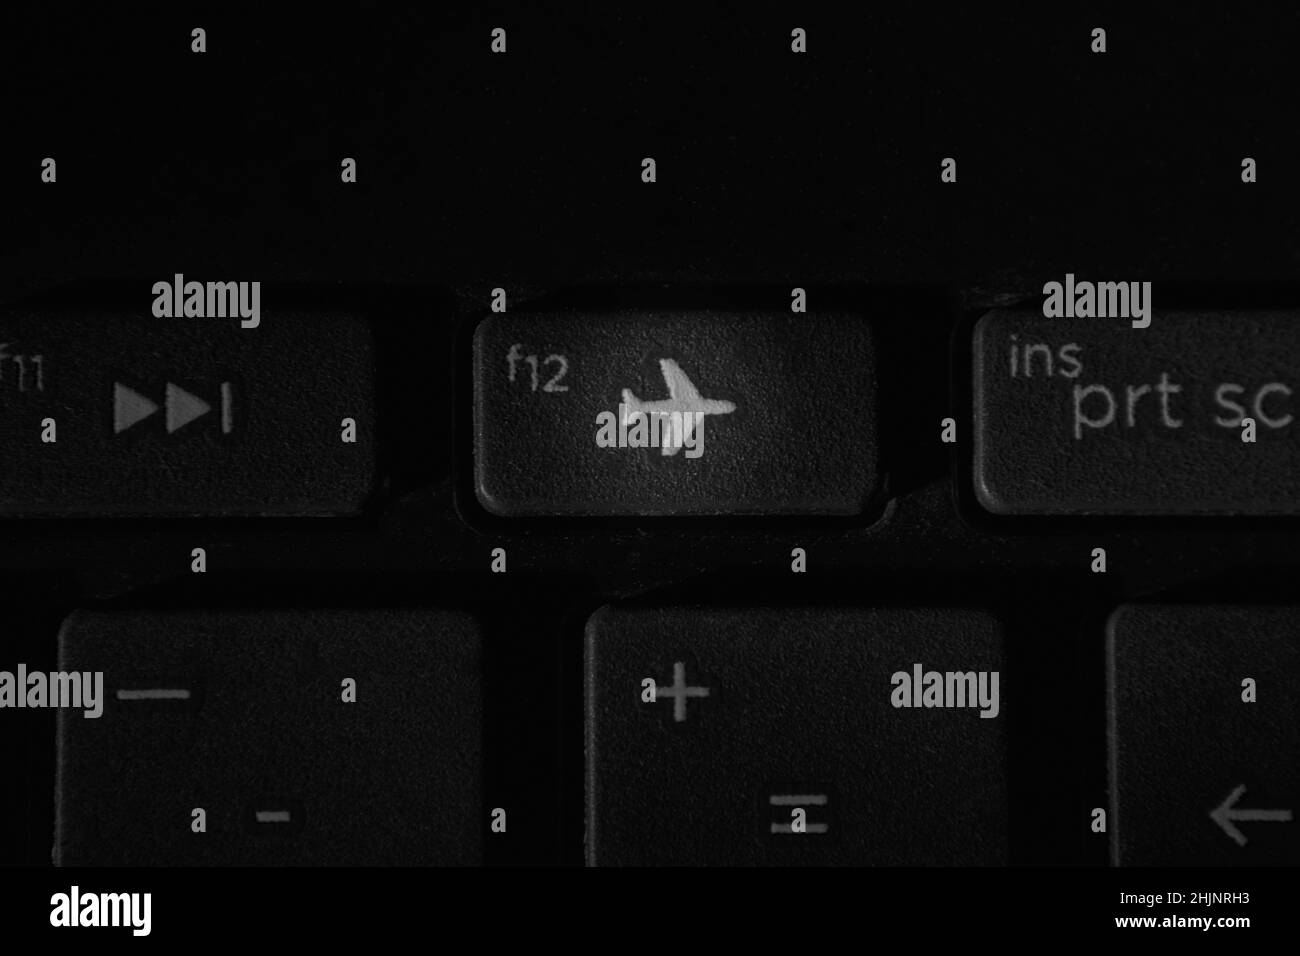 windows sleep keyboard shortcut